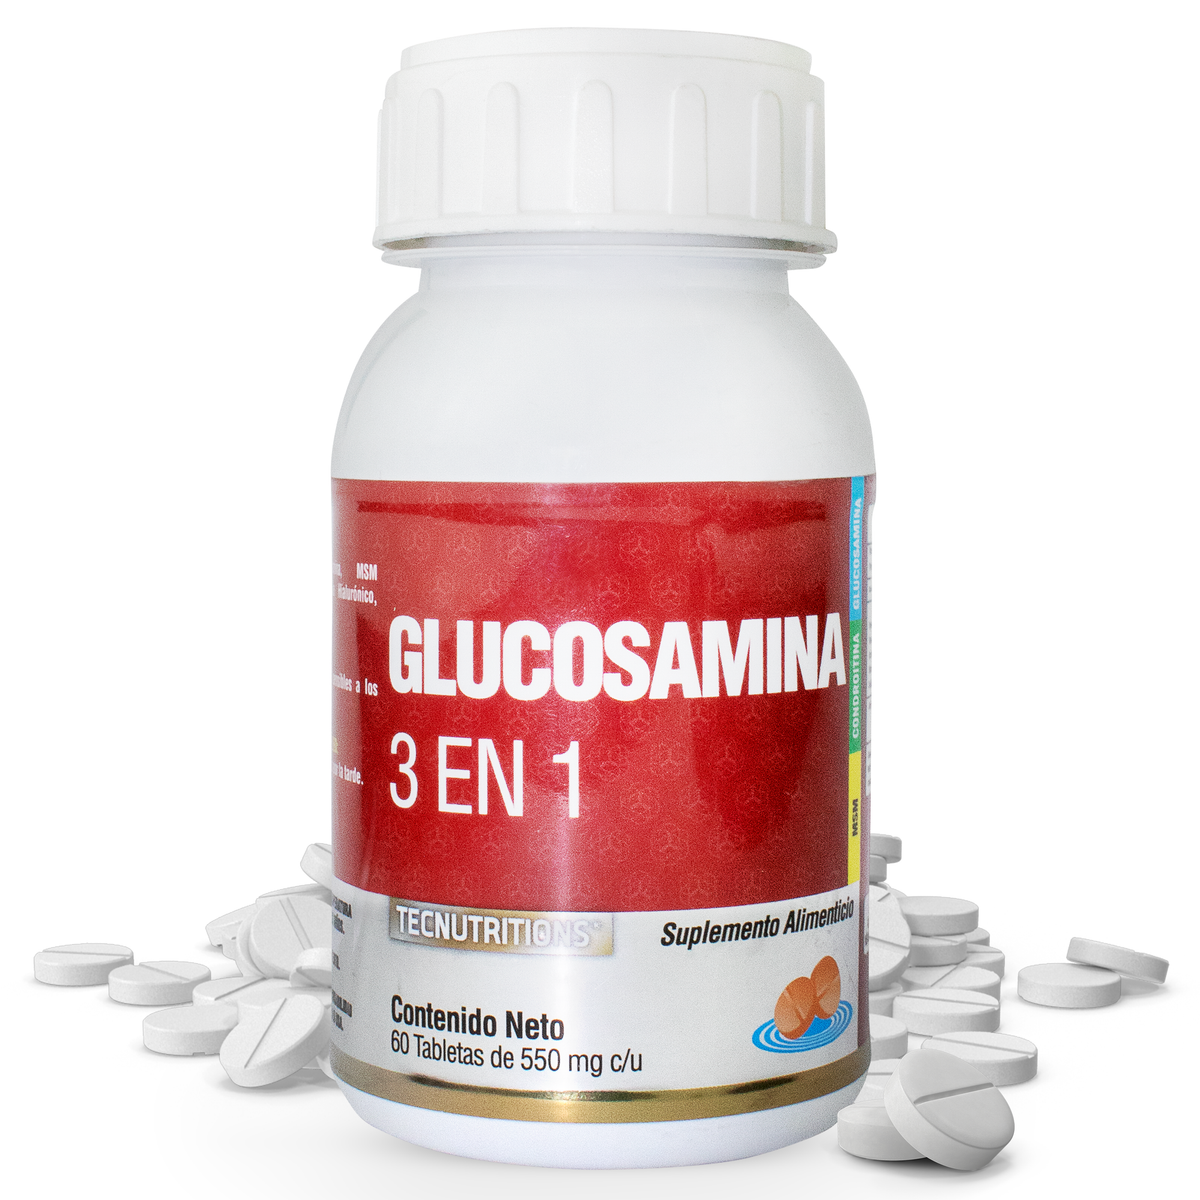 Suplemento alimenticio Glucosamina 3 en 1, 60 tabs, con glucosamina, condroitina, msm